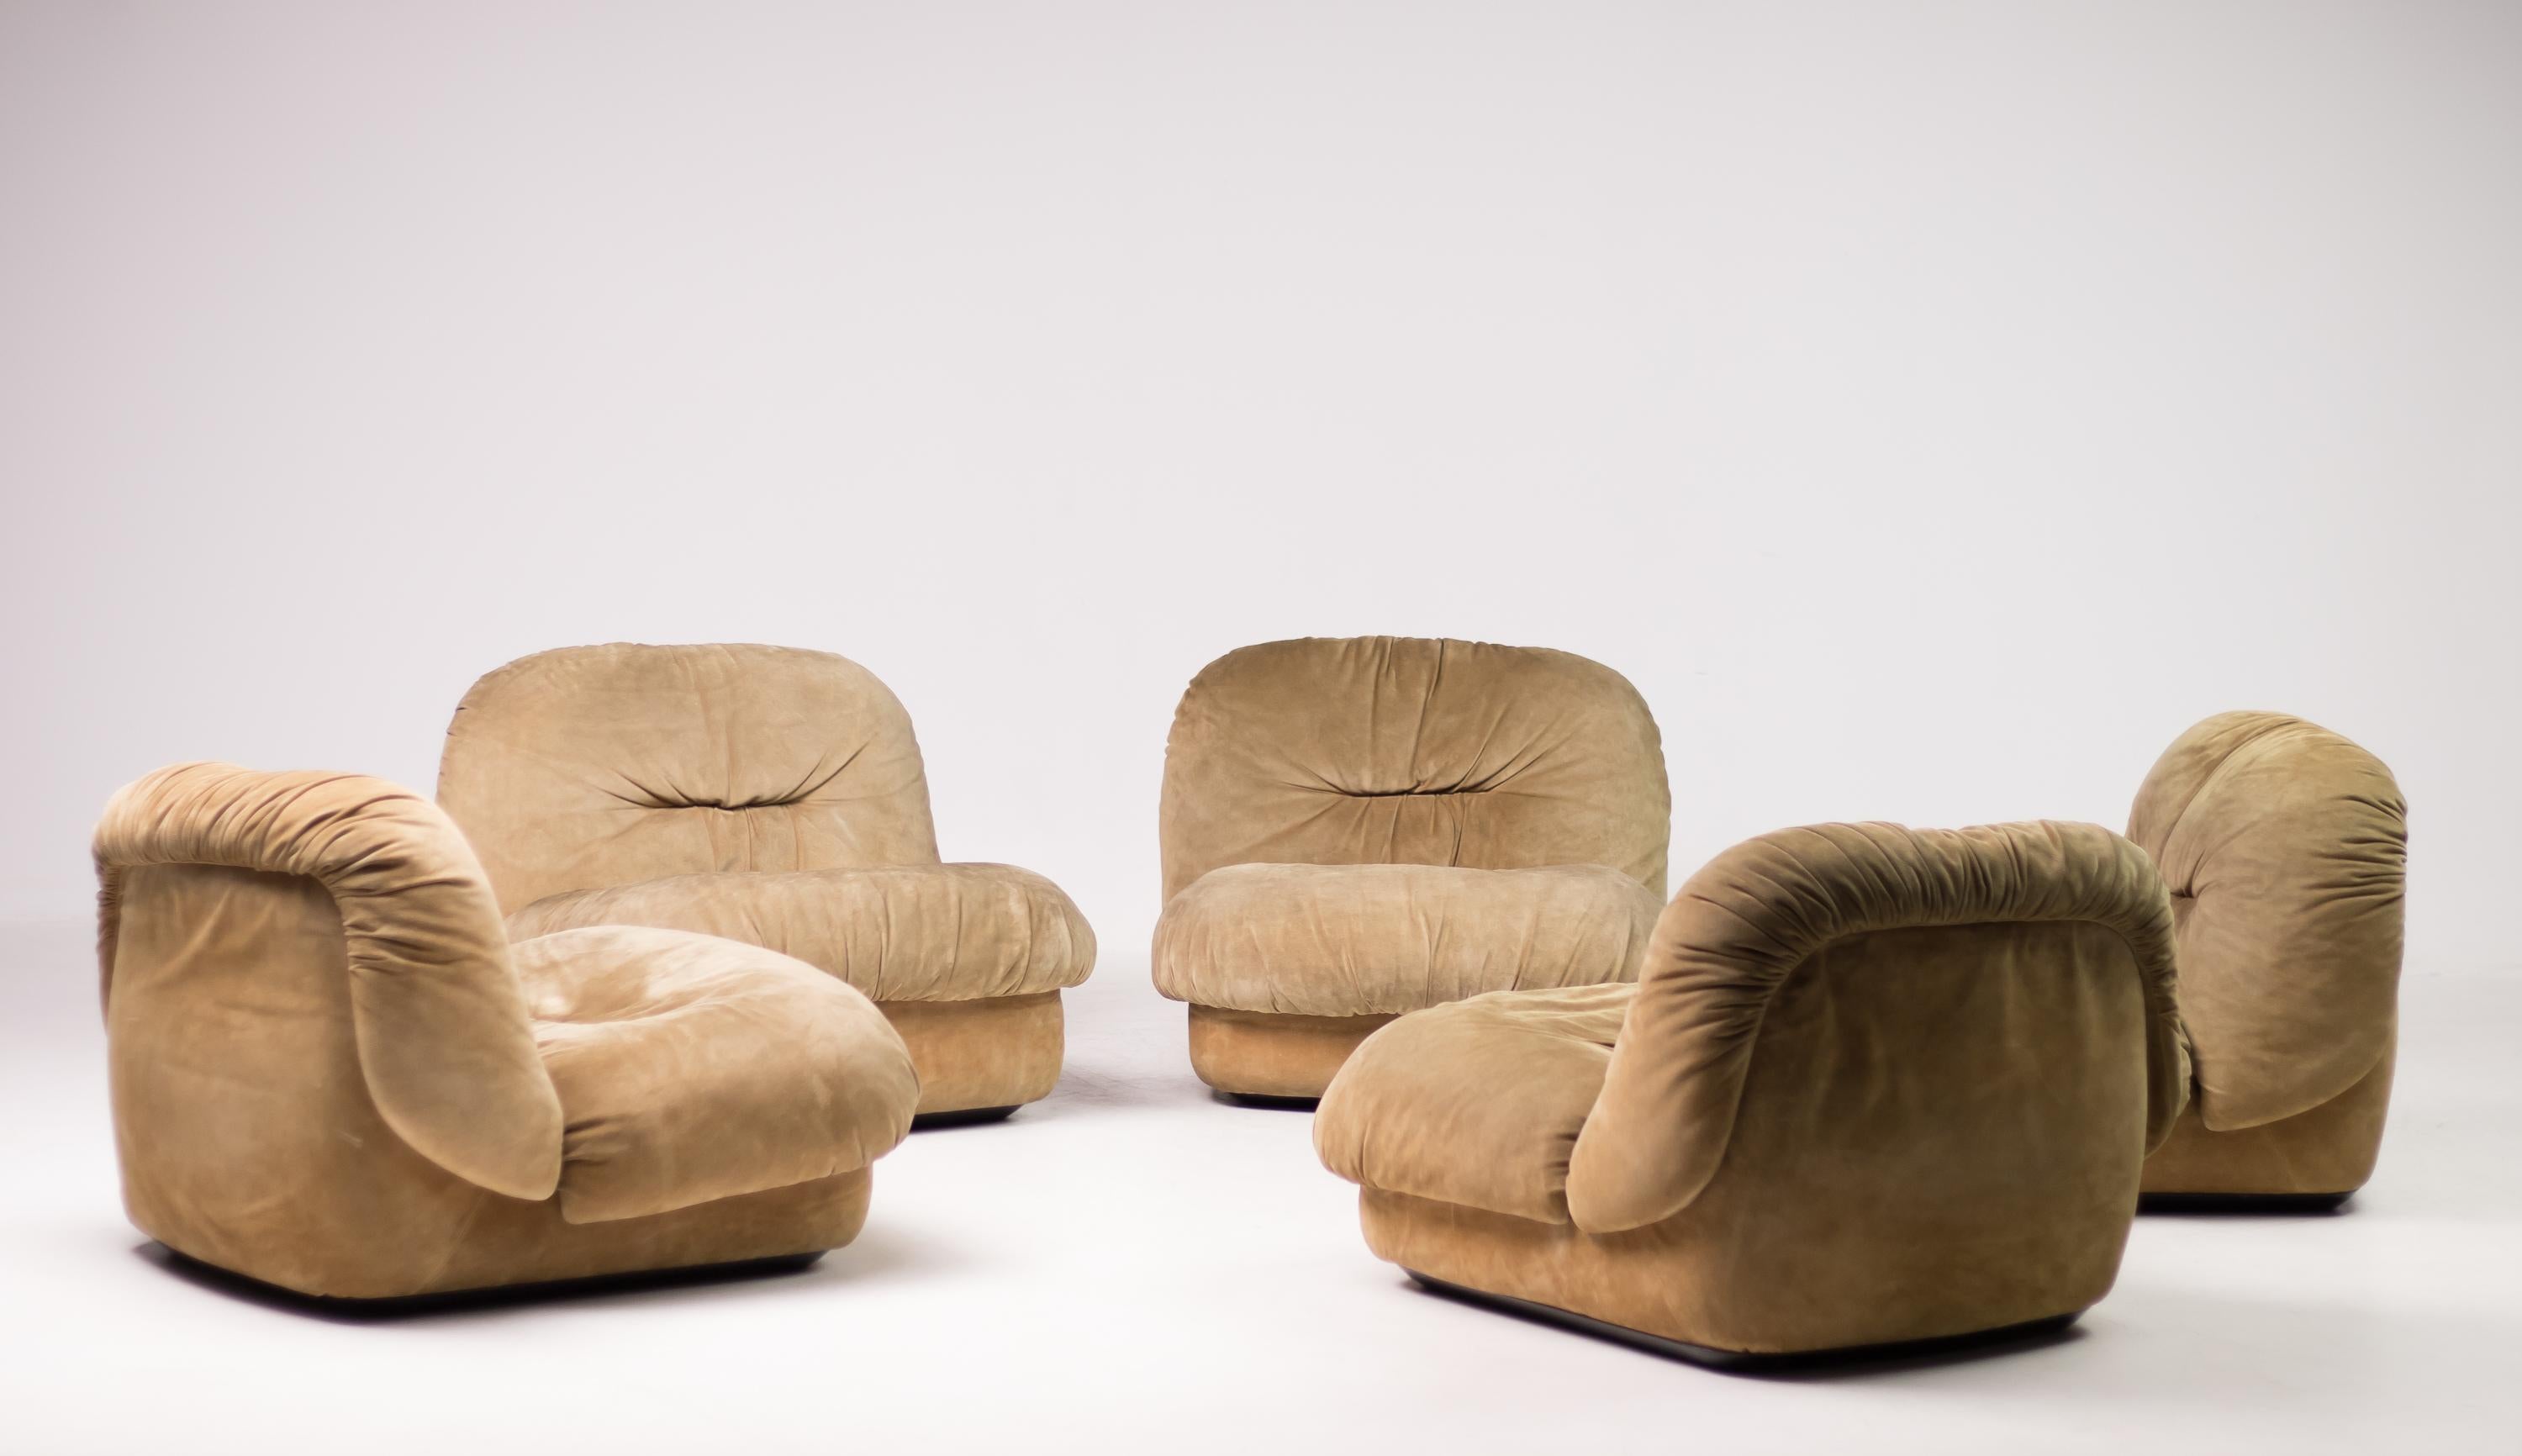 Italian Maxijumbo Lounge Seating by Alberto Rosselli for Saporiti